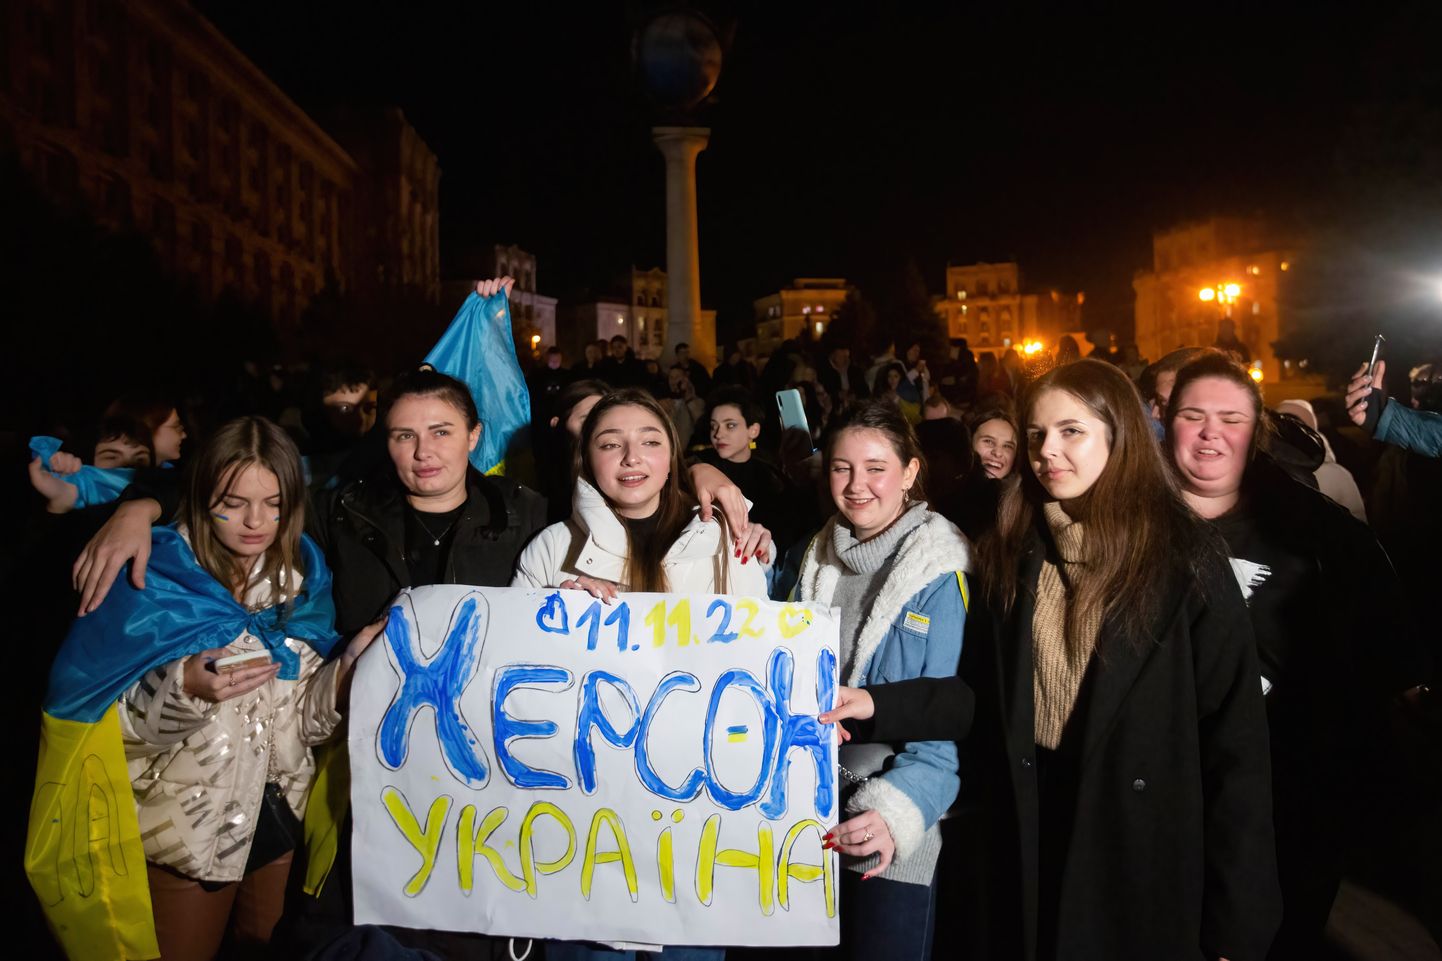 Inimesed tähistamas Kiievi kesklinnas Hersoni vabastamist lehvitades seejuures plakatit eilse kuupäevaga ja sõnumiga «Herson on Ukraina».